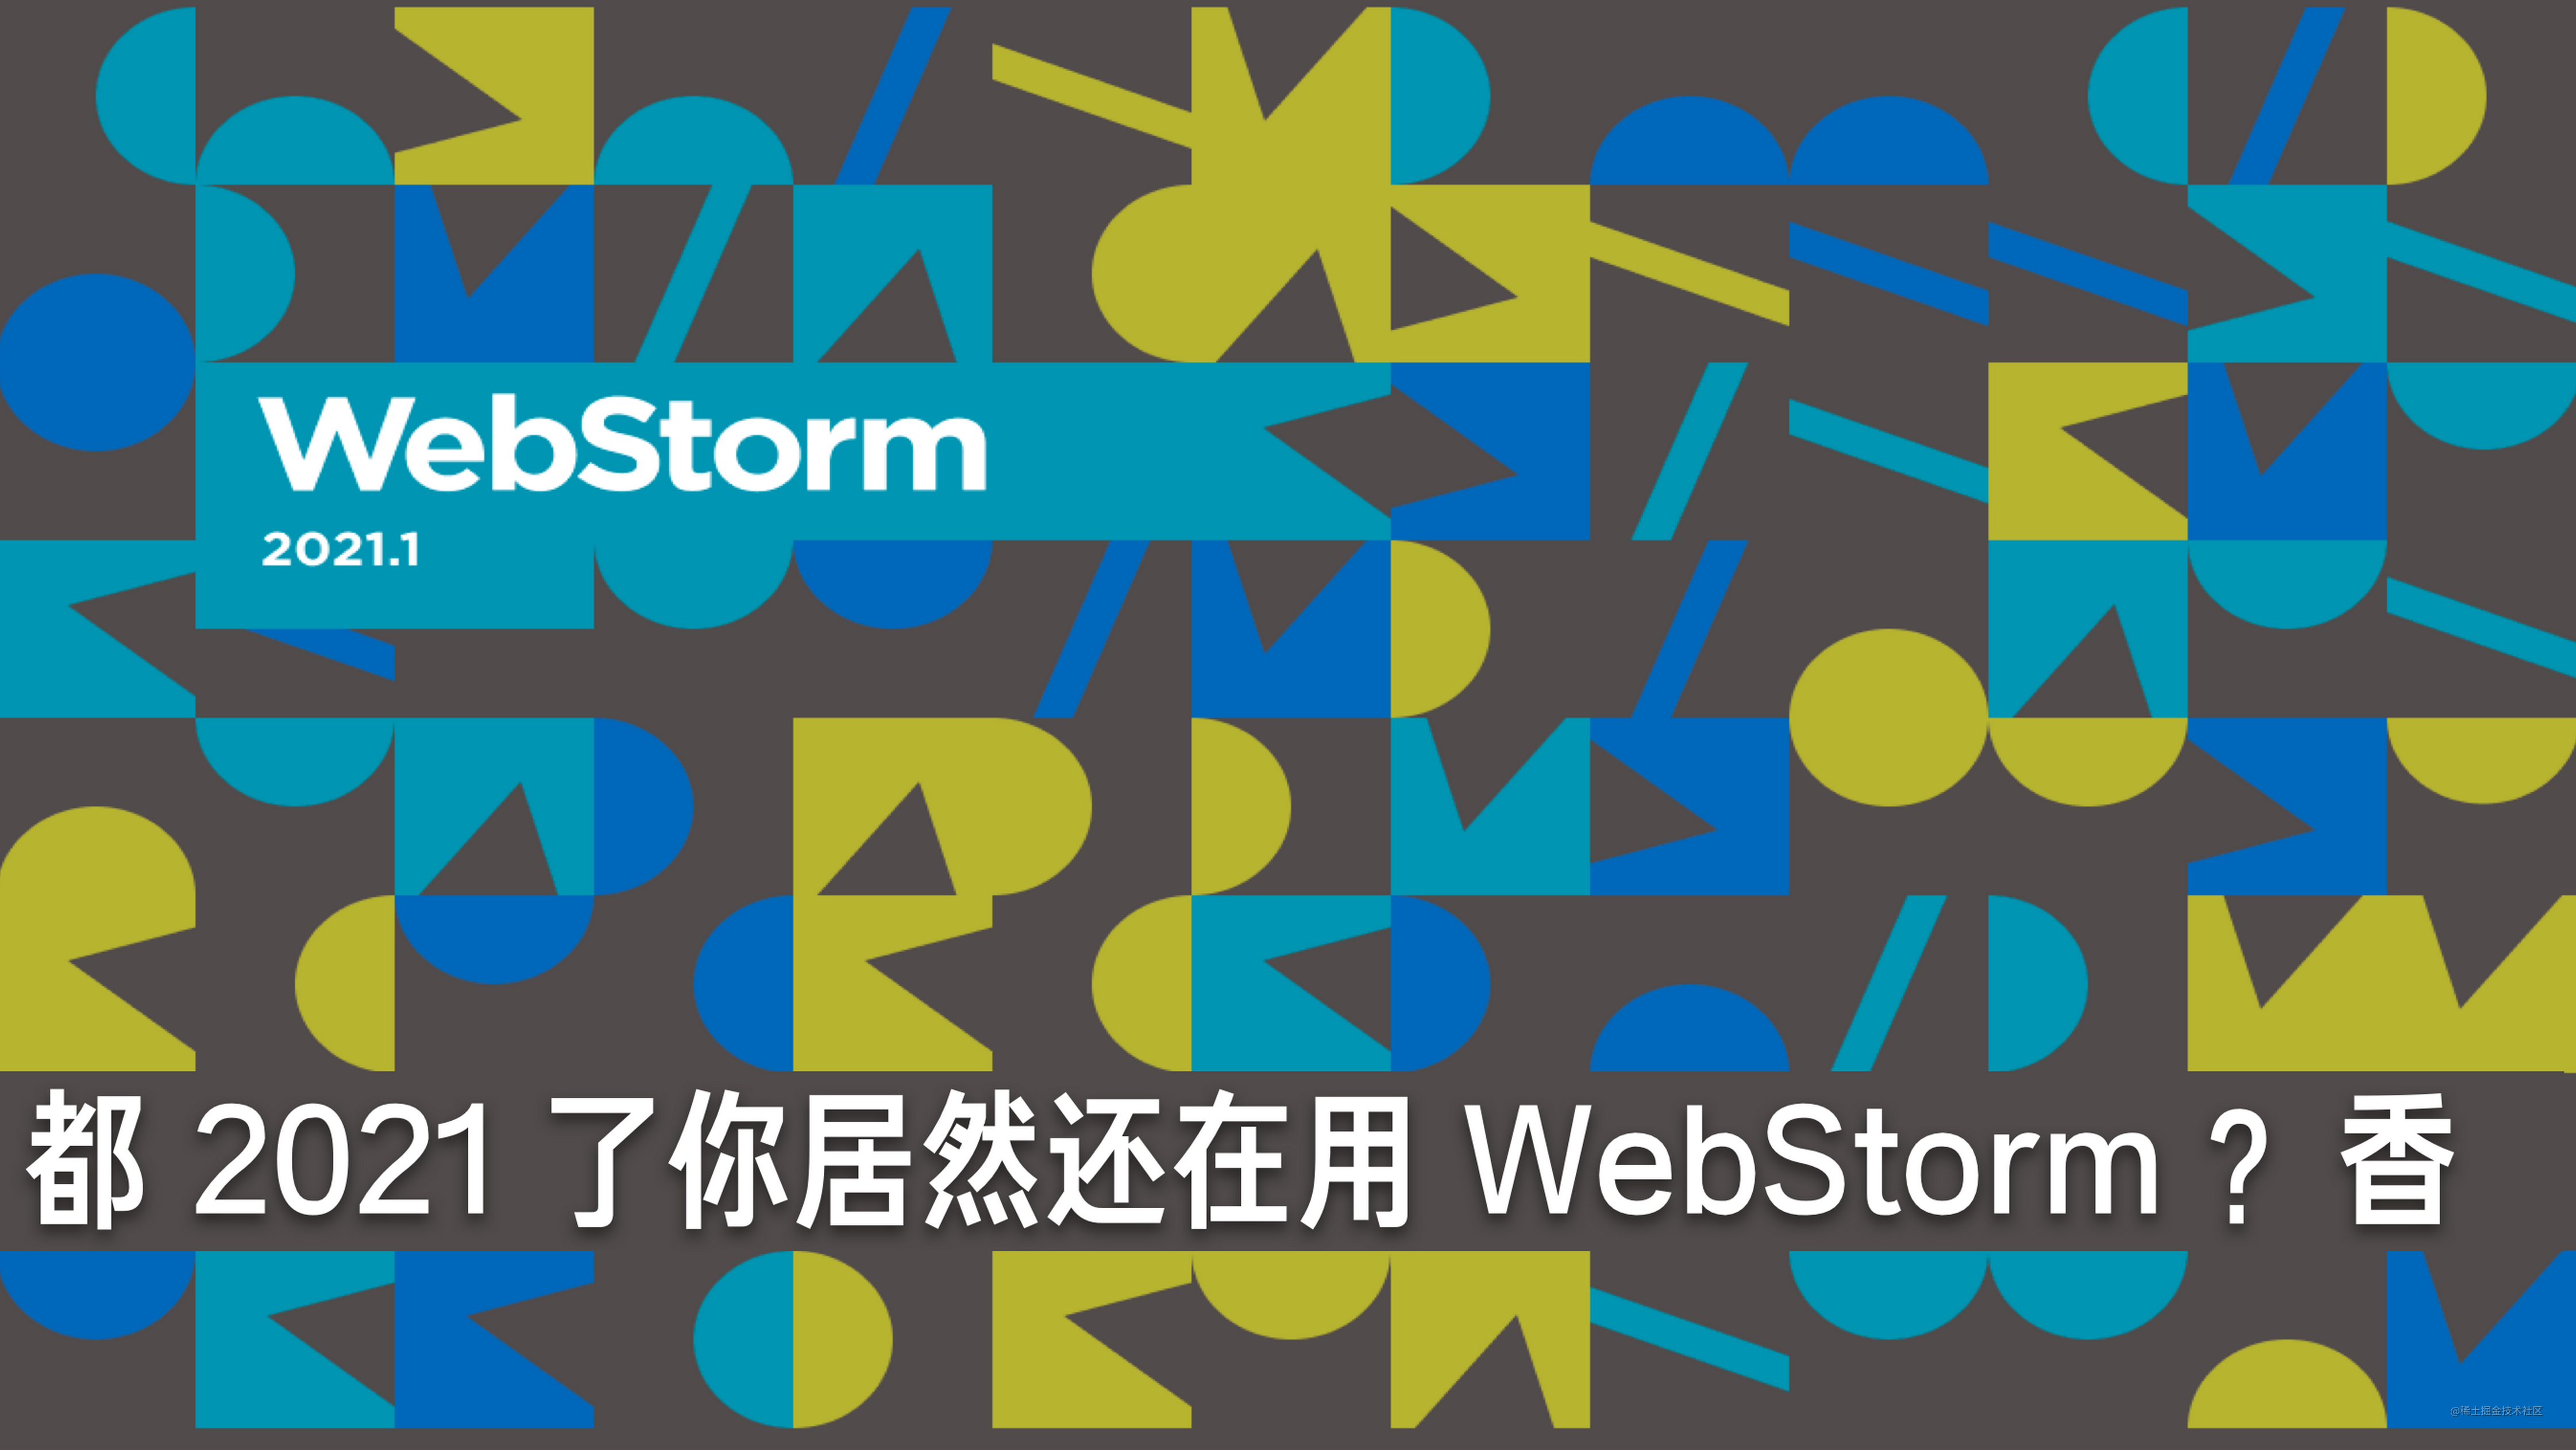 都 2022 了你居然还在用 WebStorm ？